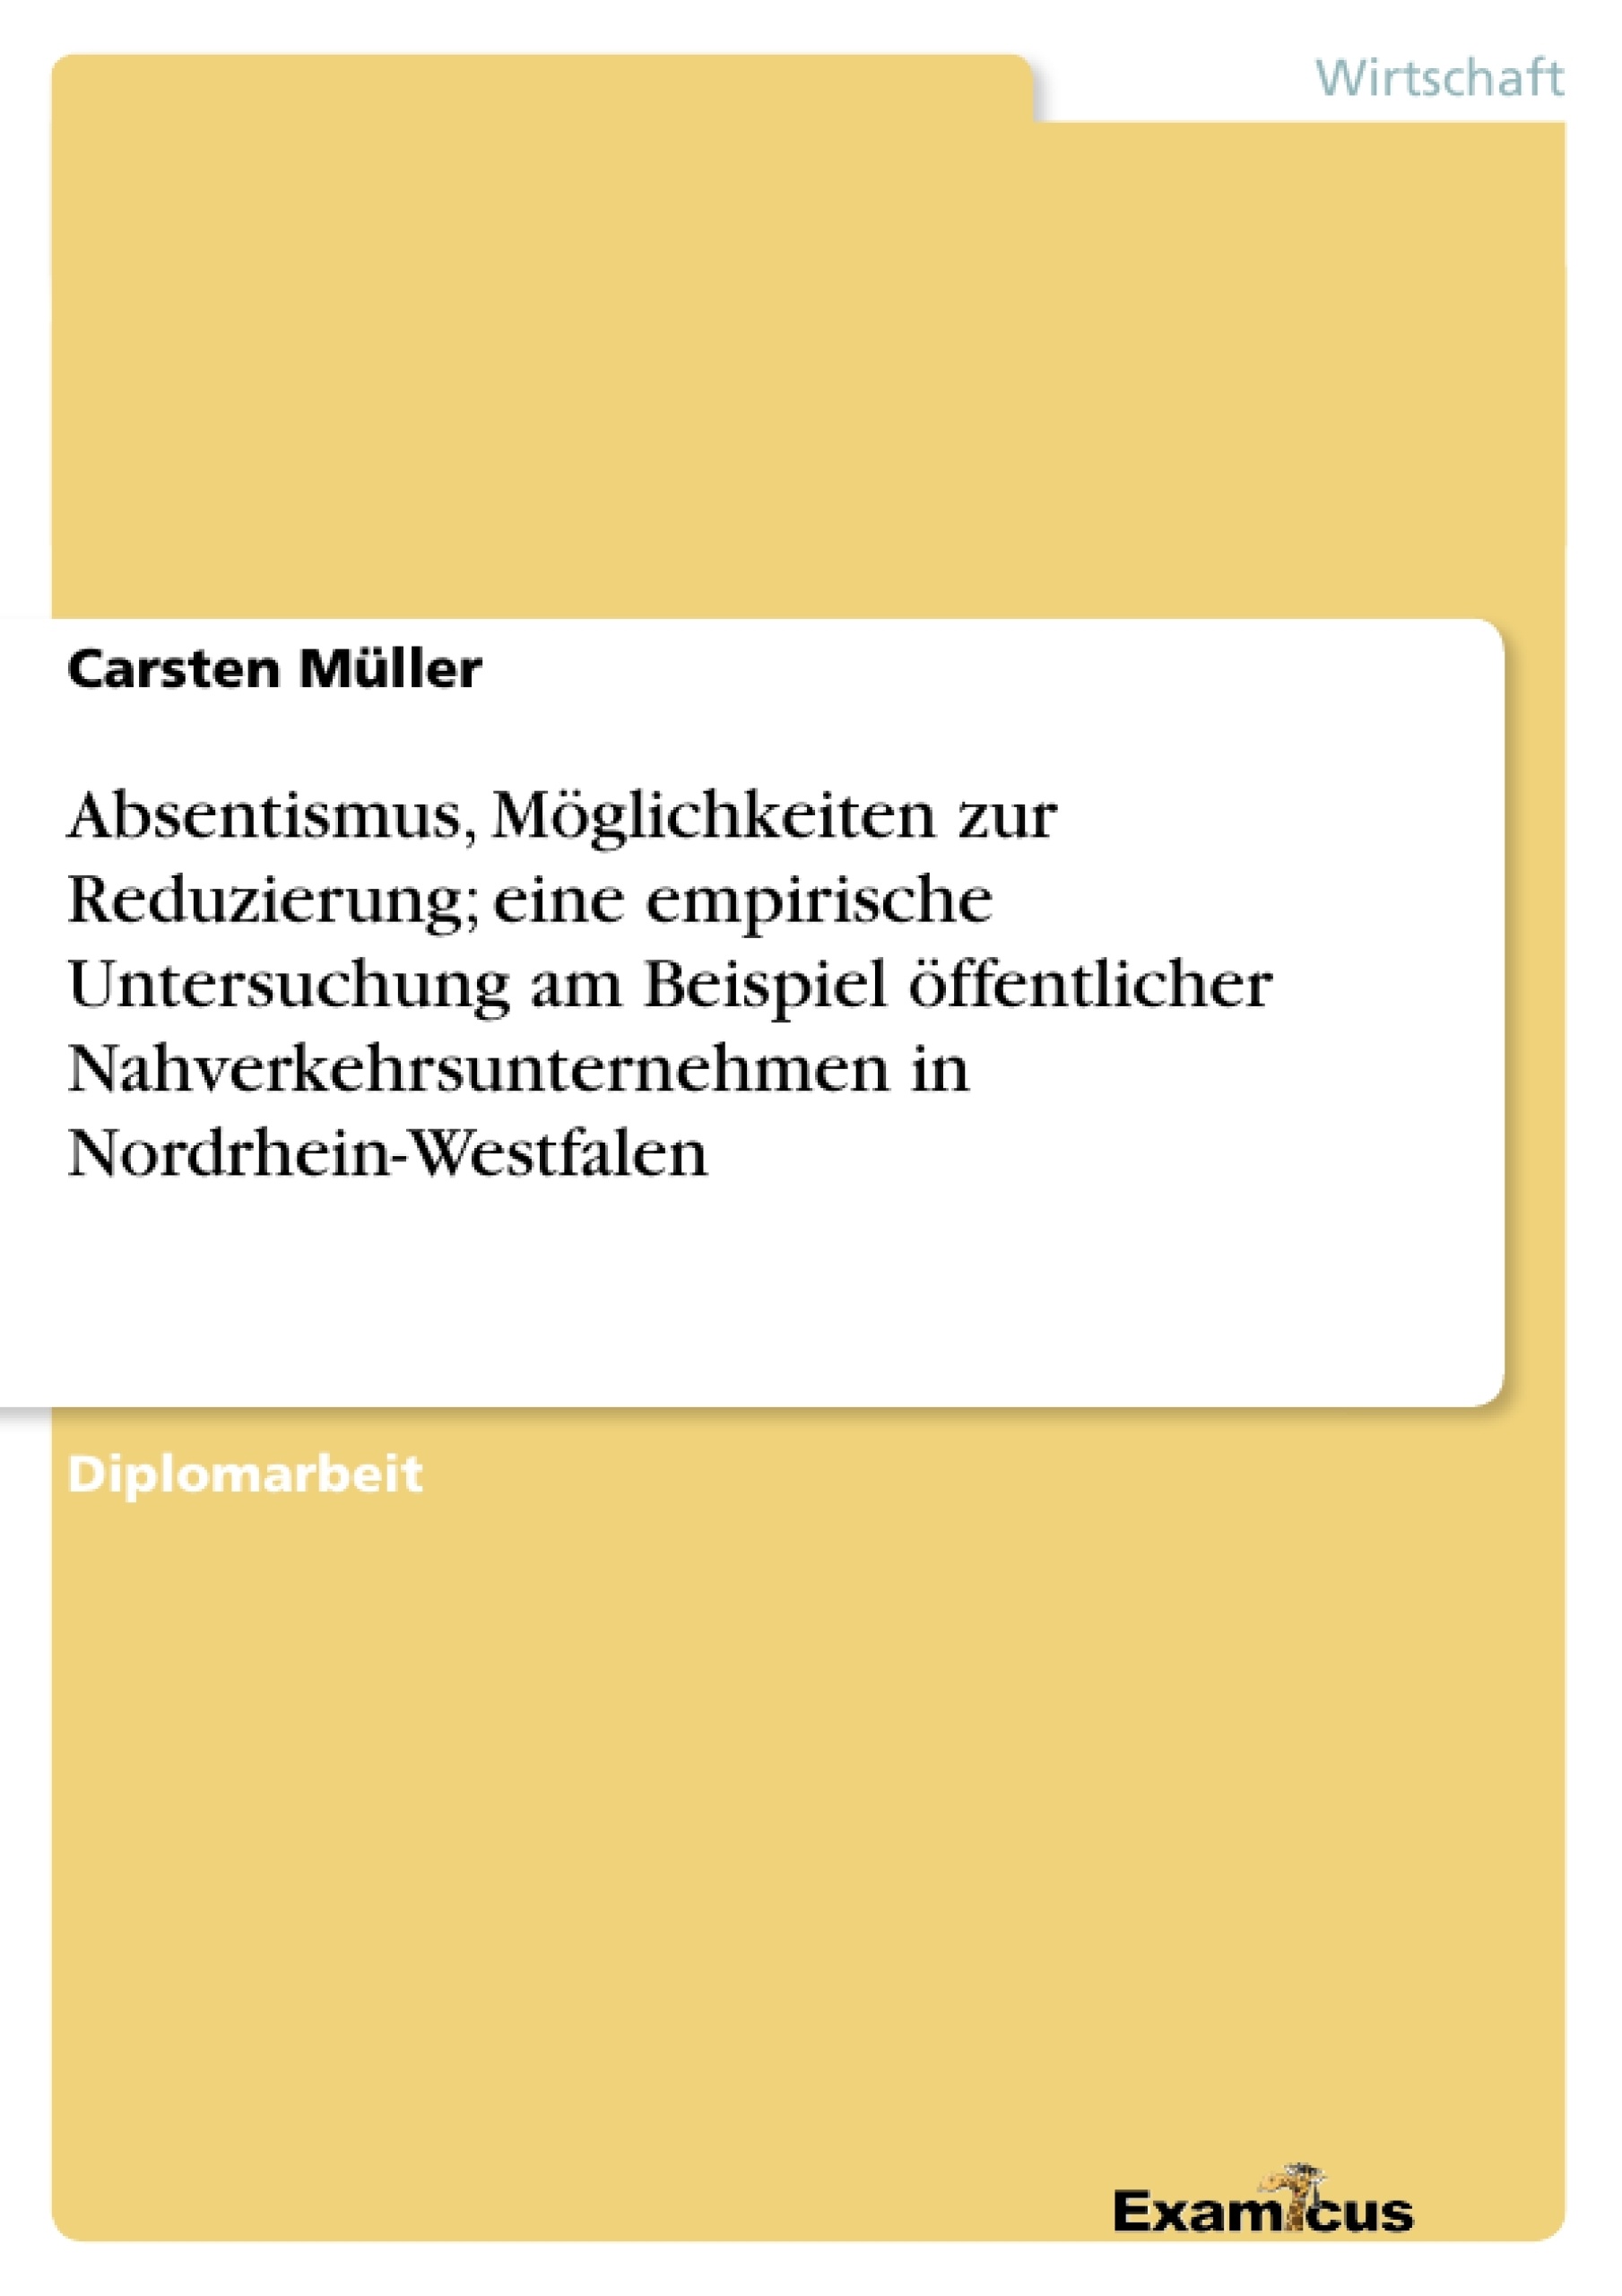 Title: Absentismus, Möglichkeiten zur Reduzierung; eine empirische Untersuchung am Beispiel öffentlicher Nahverkehrsunternehmen in Nordrhein-Westfalen